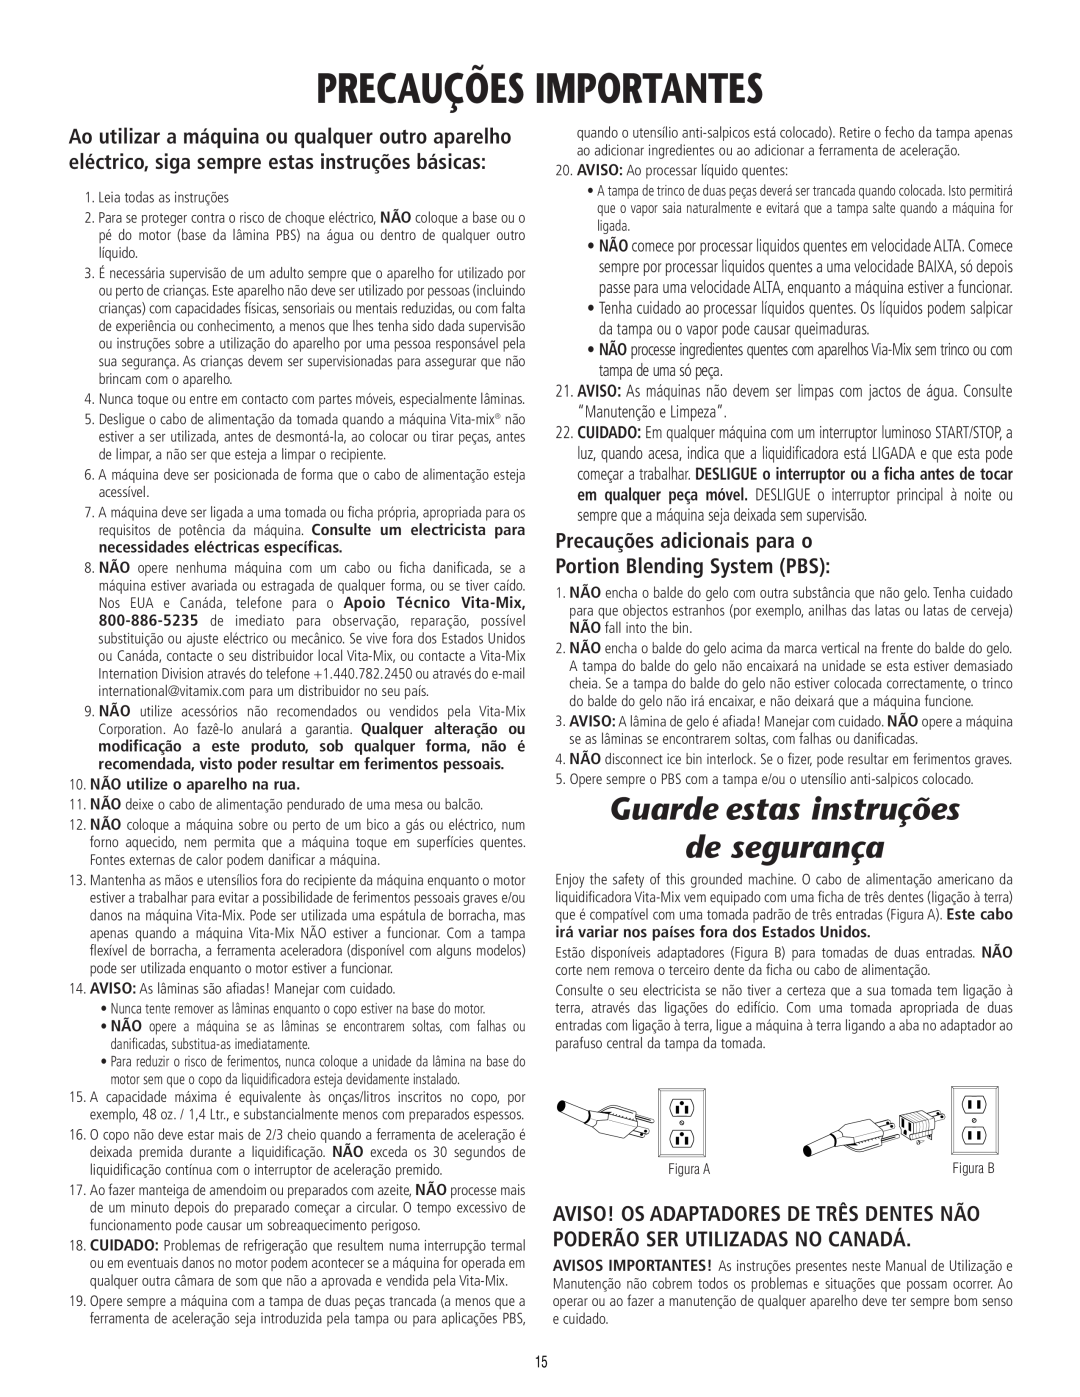 Vita-Mix 101807 manual Precauções Importantes, Guarde estas instruções de segurança, Precauções adicionais para o 